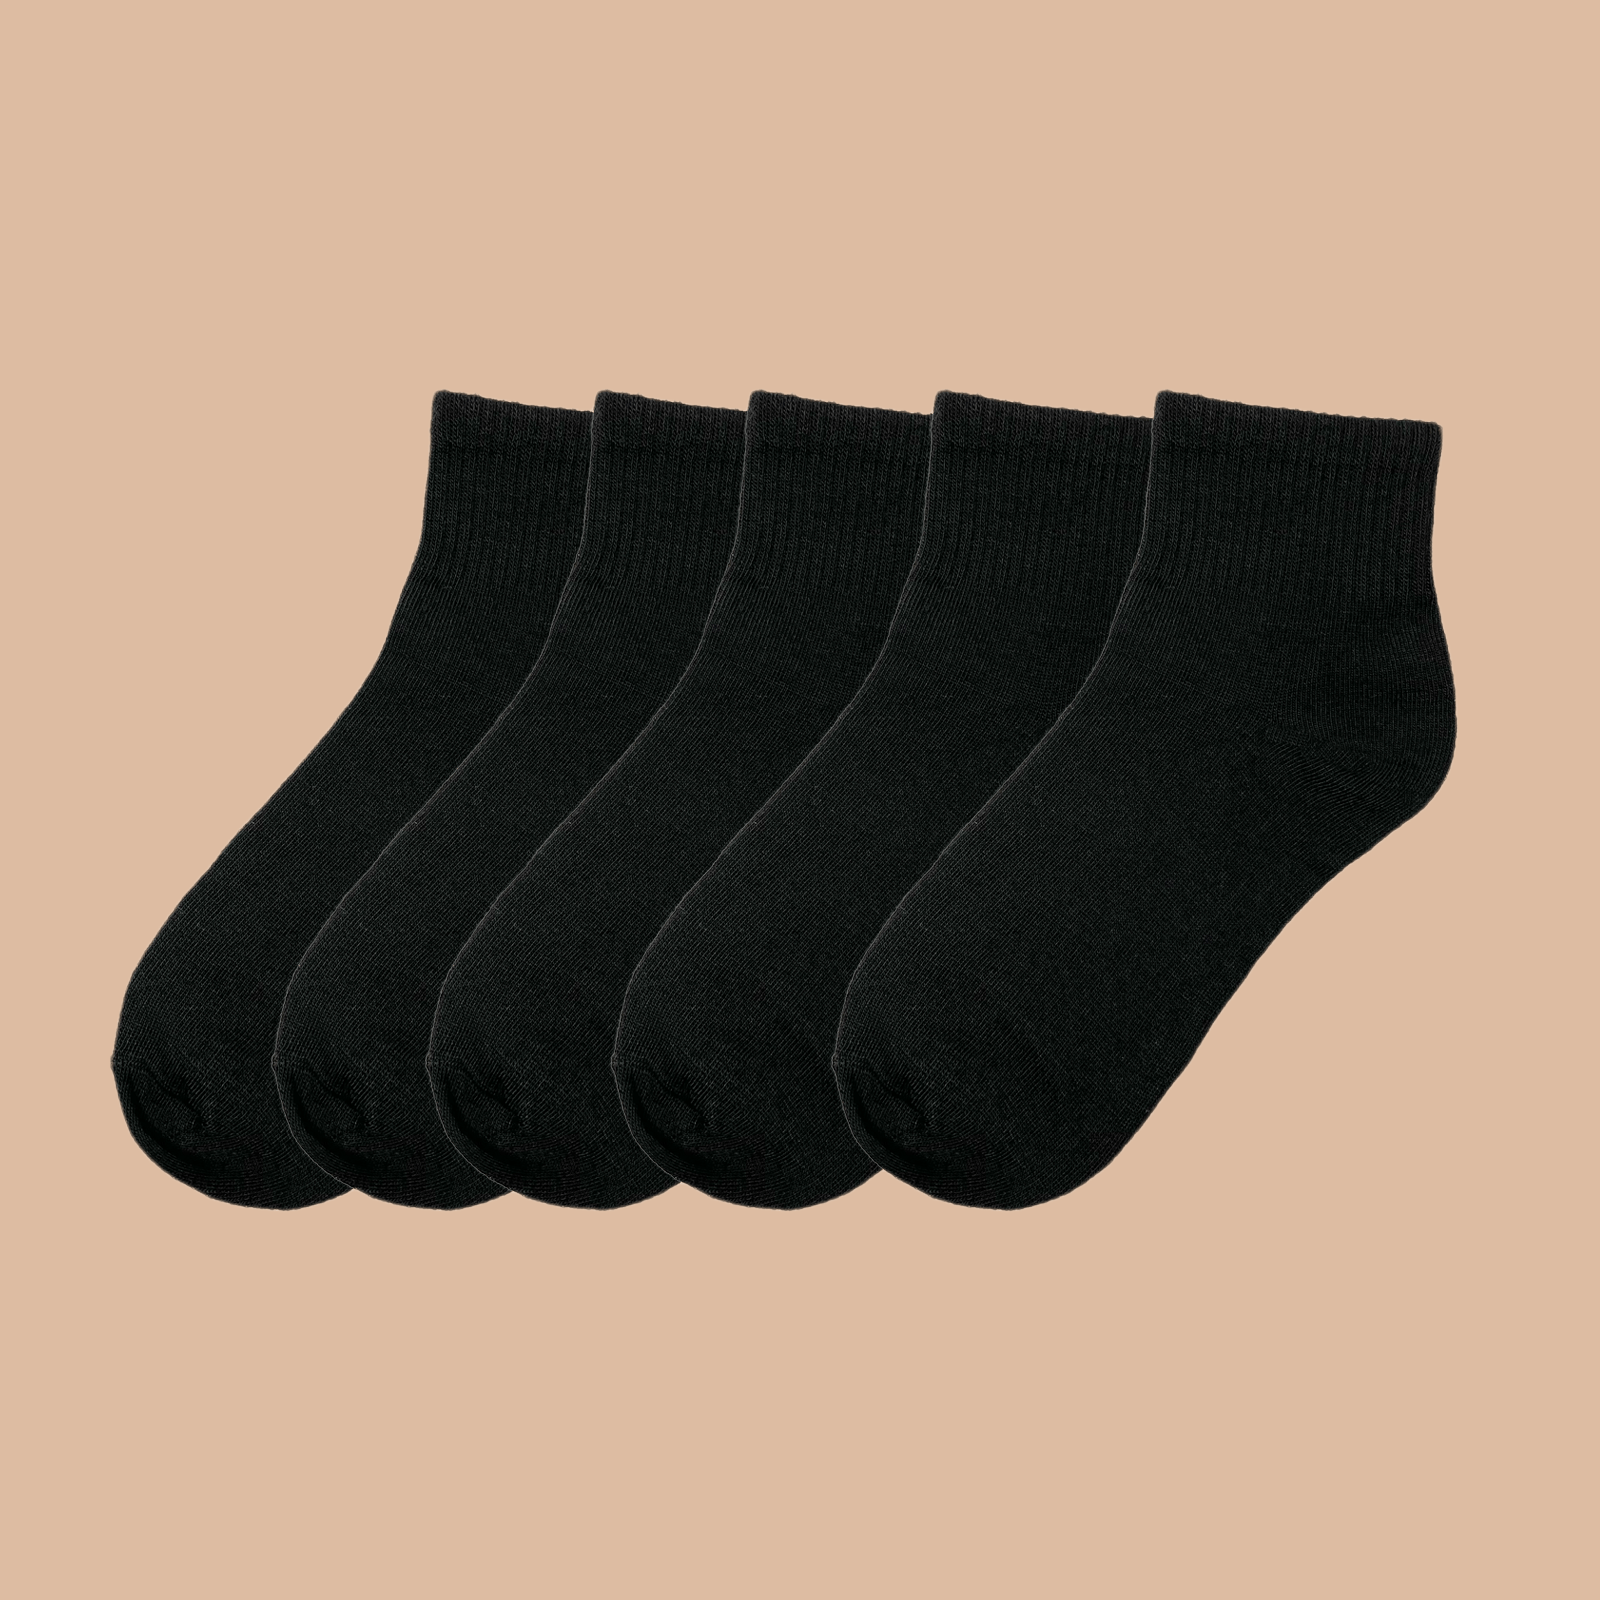  eallco Calcetines tobilleros para mujer, 6 pares de calcetines  deportivos con suela acolchada con lengüeta, 6 pares negro : Ropa, Zapatos  y Joyería